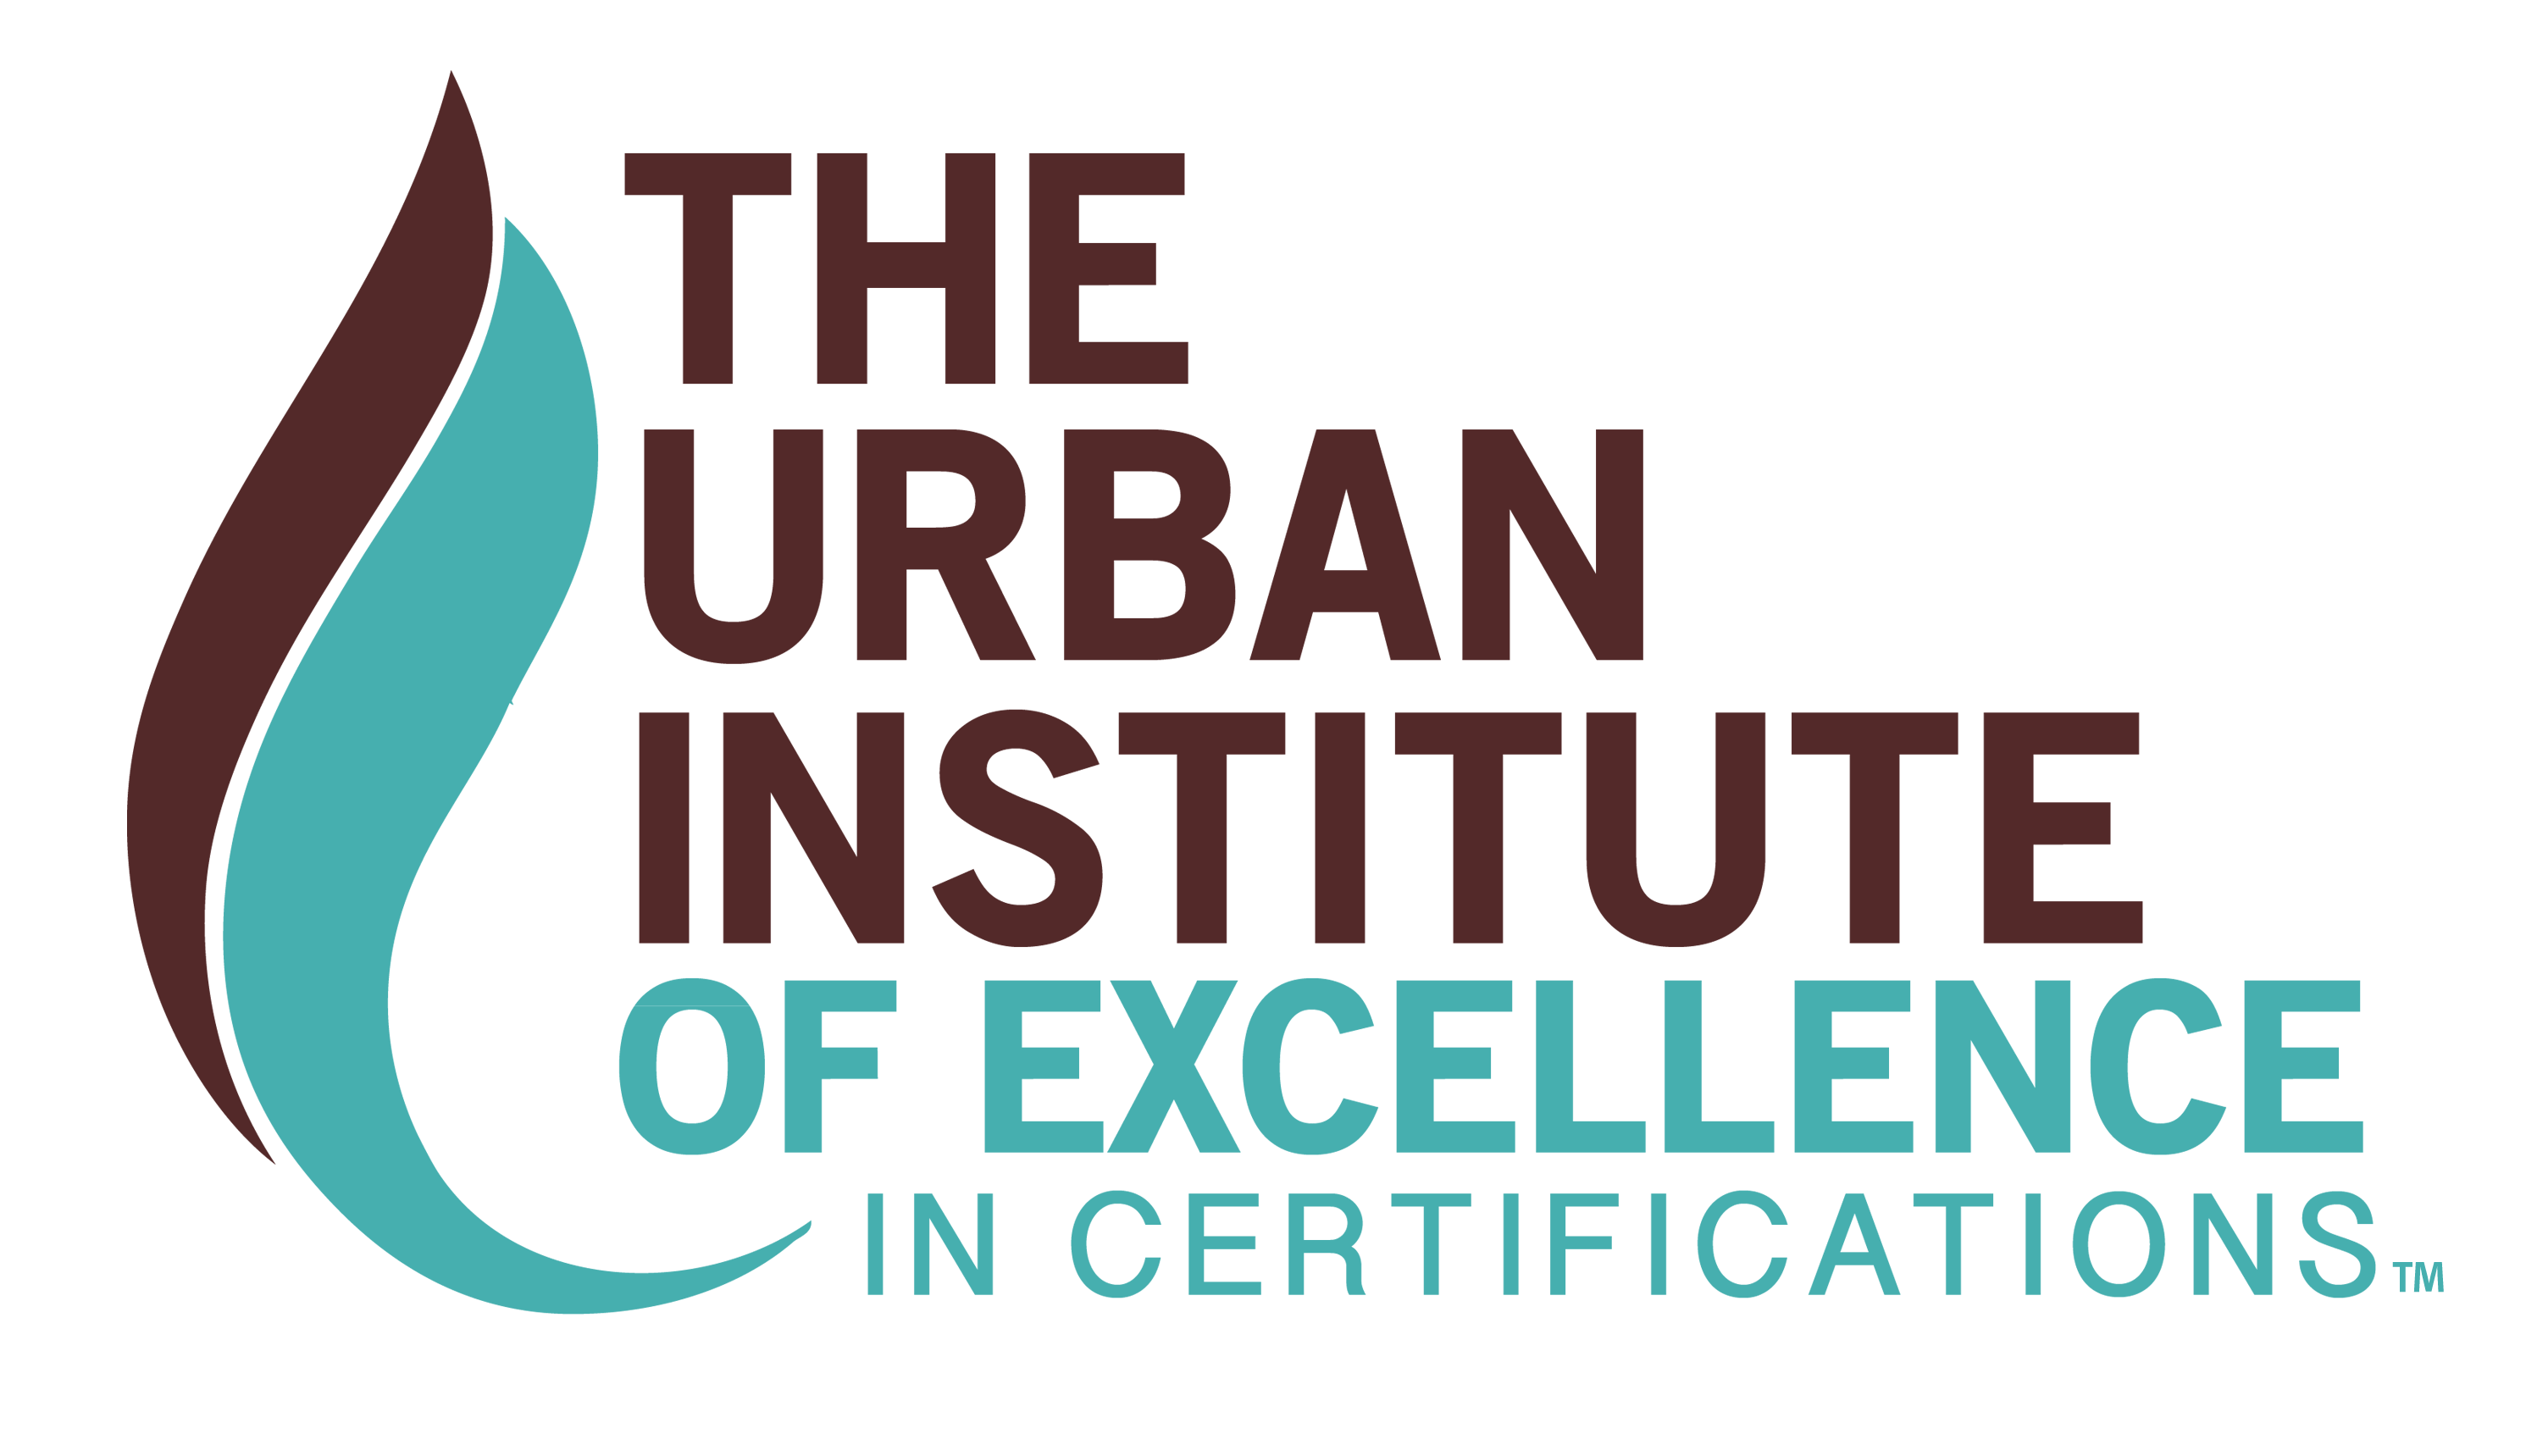 The Urban Institute